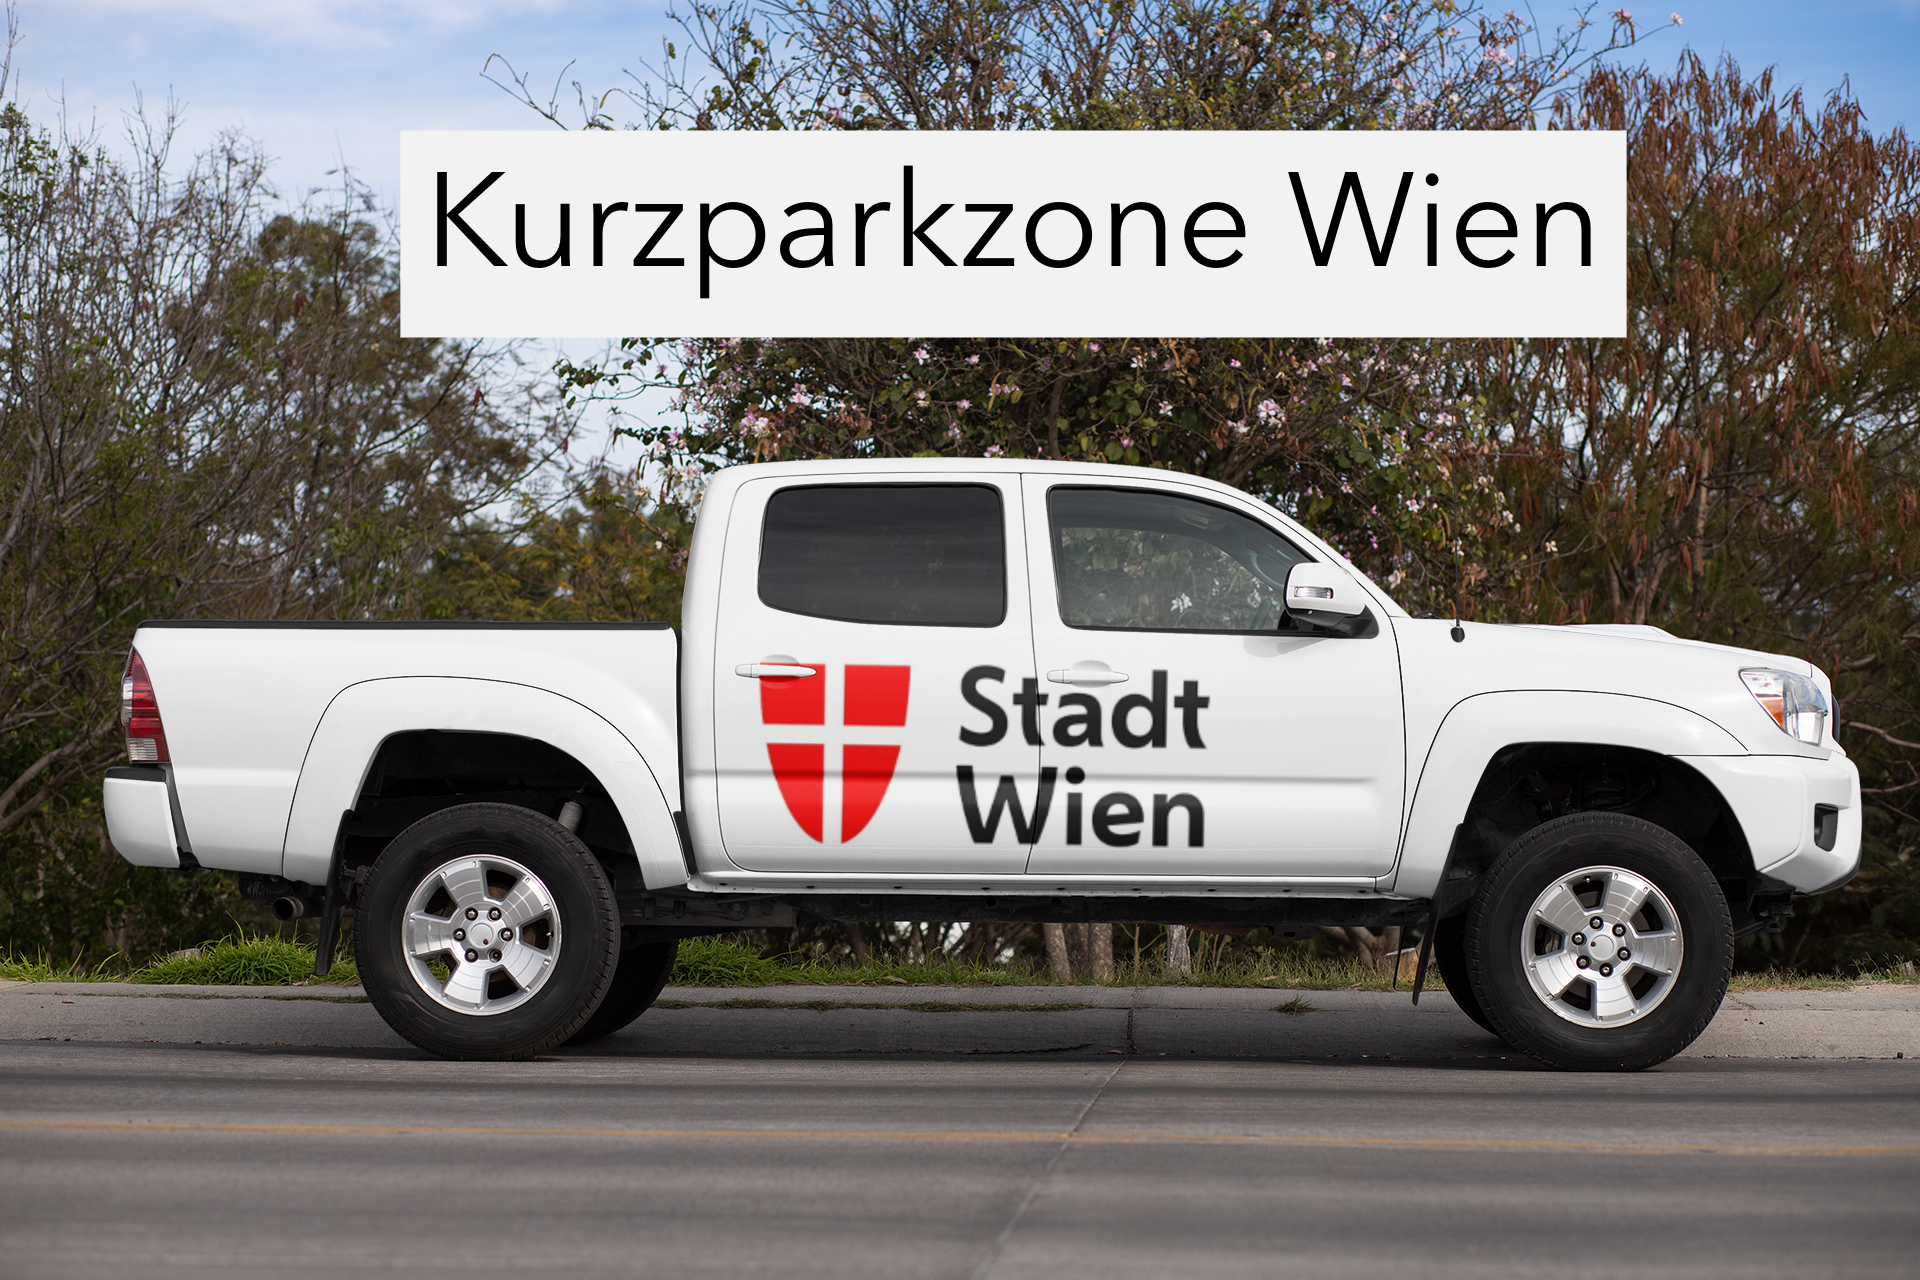 Kurzparkzone Wien